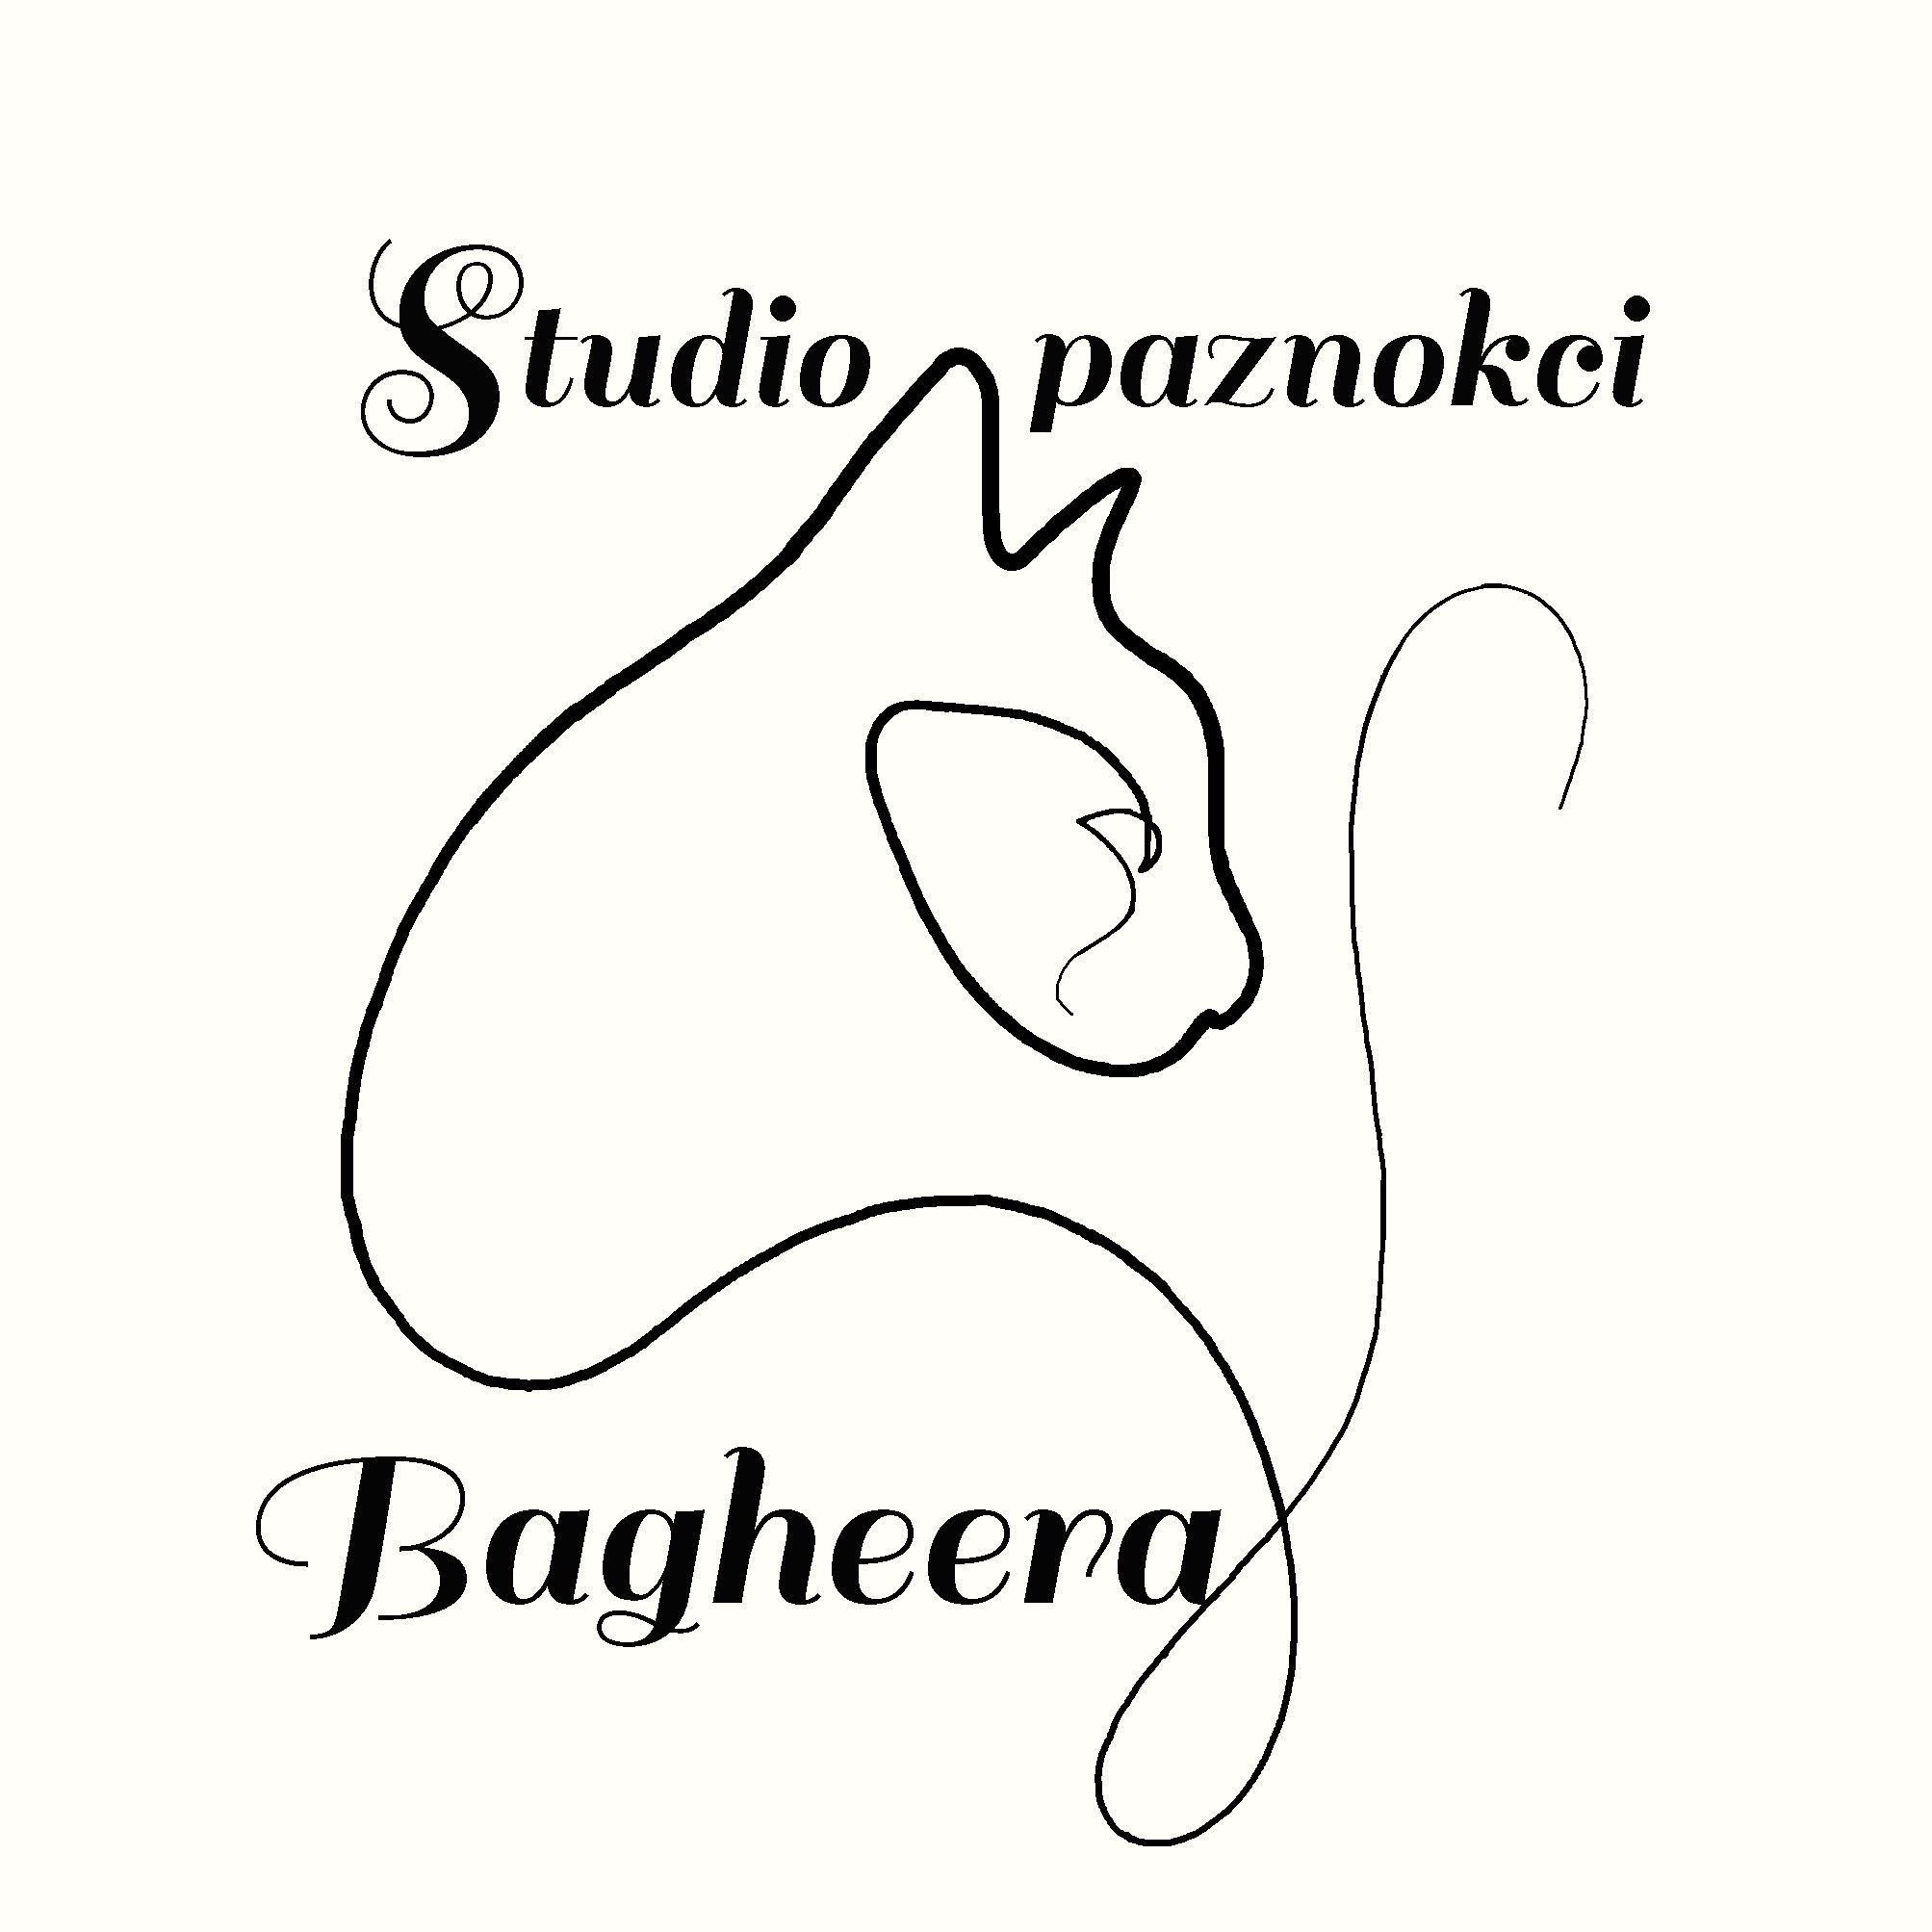 Studio Paznokci BAGHEERA, Świeradowska, 24a, 50-559, Wrocław, Krzyki